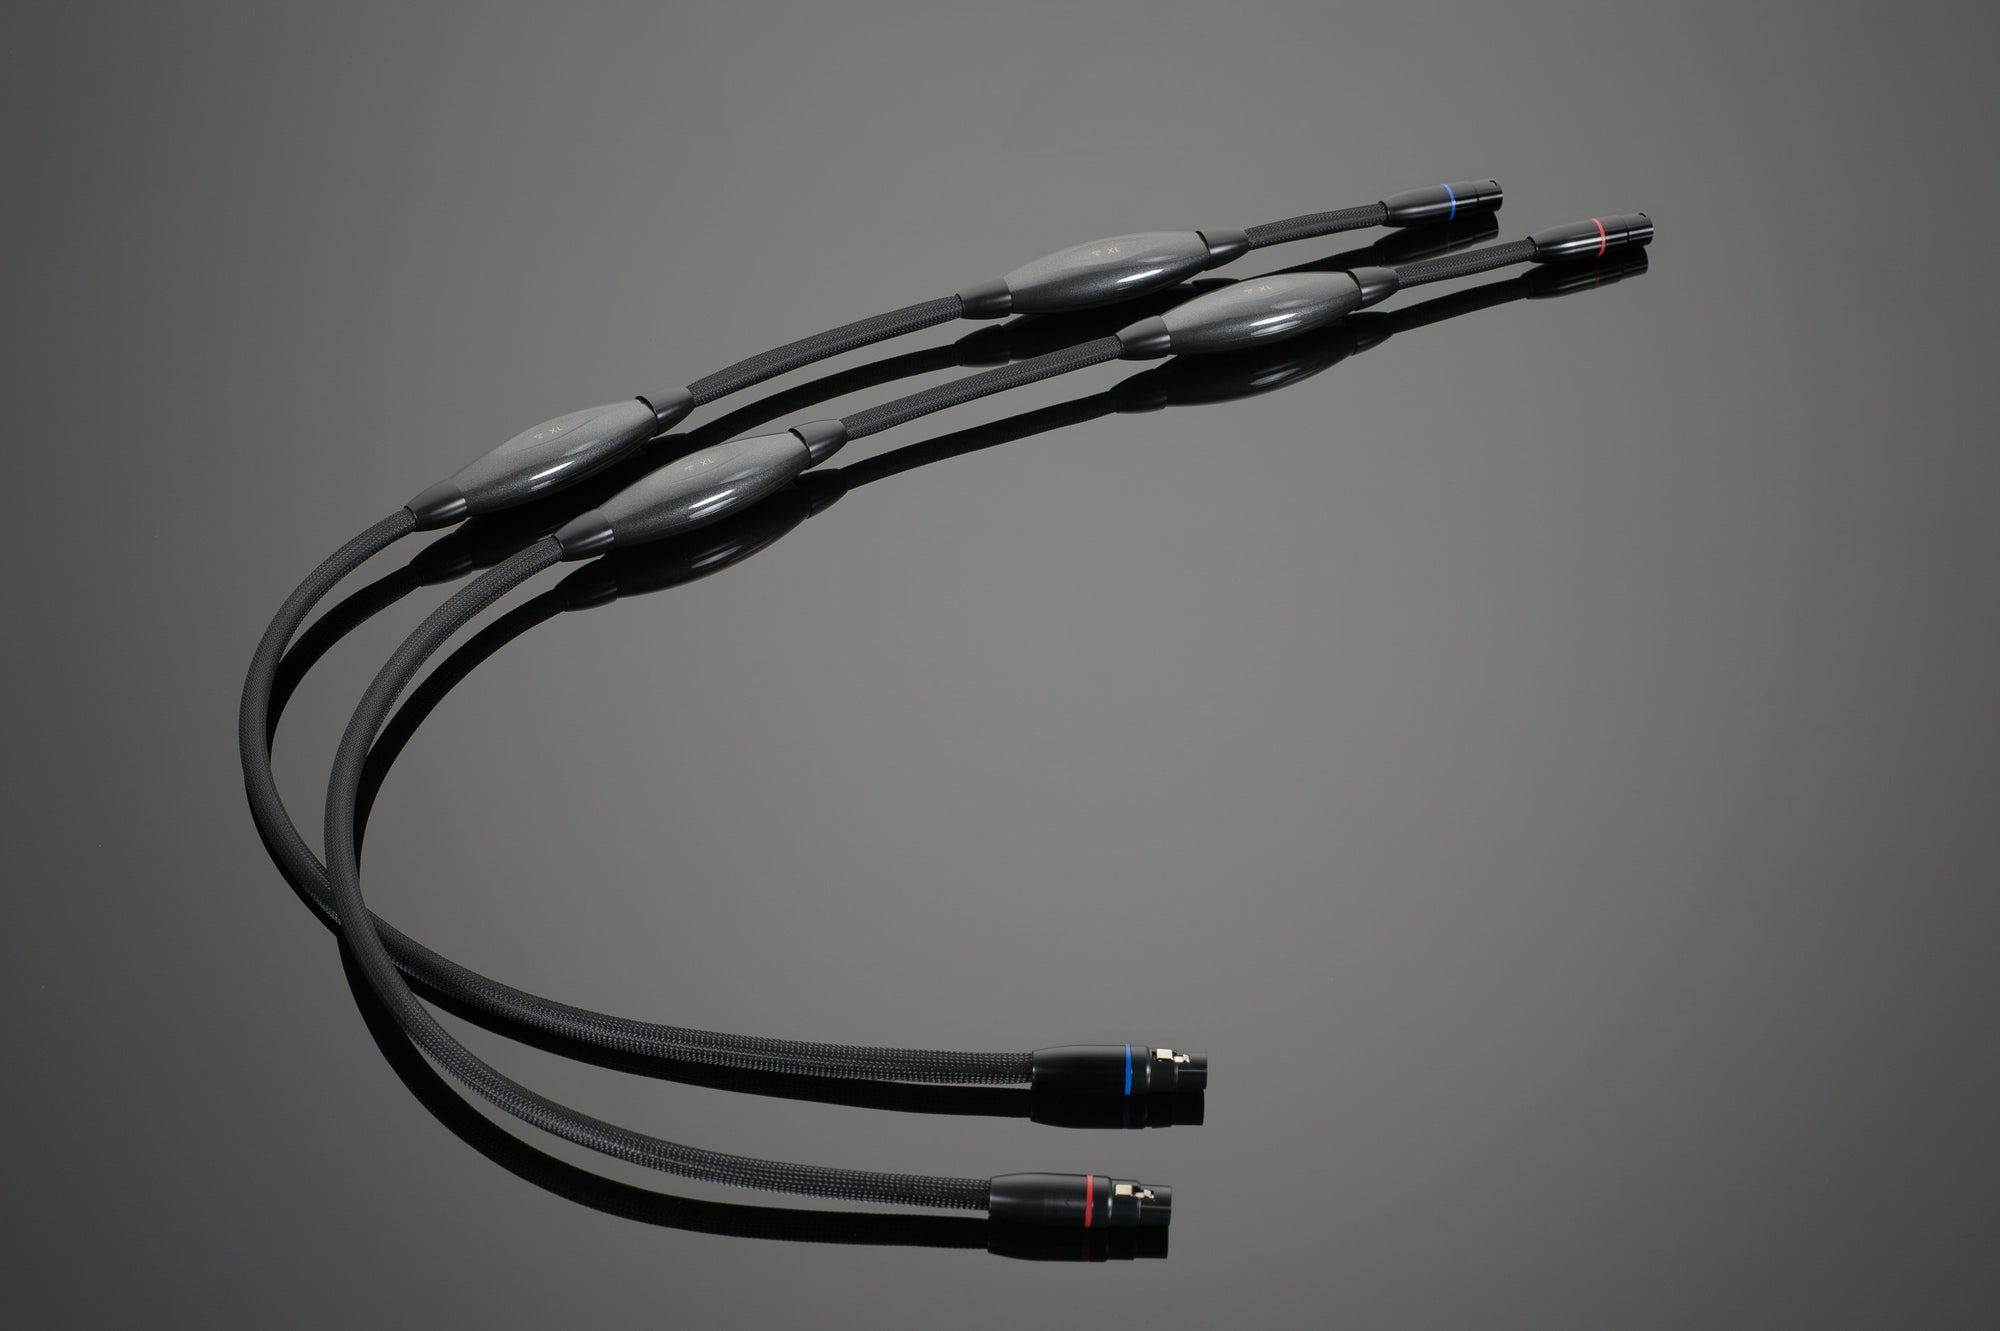 Transparent Ultra Speaker Cable câbles hp et straps chez E&M à Paris